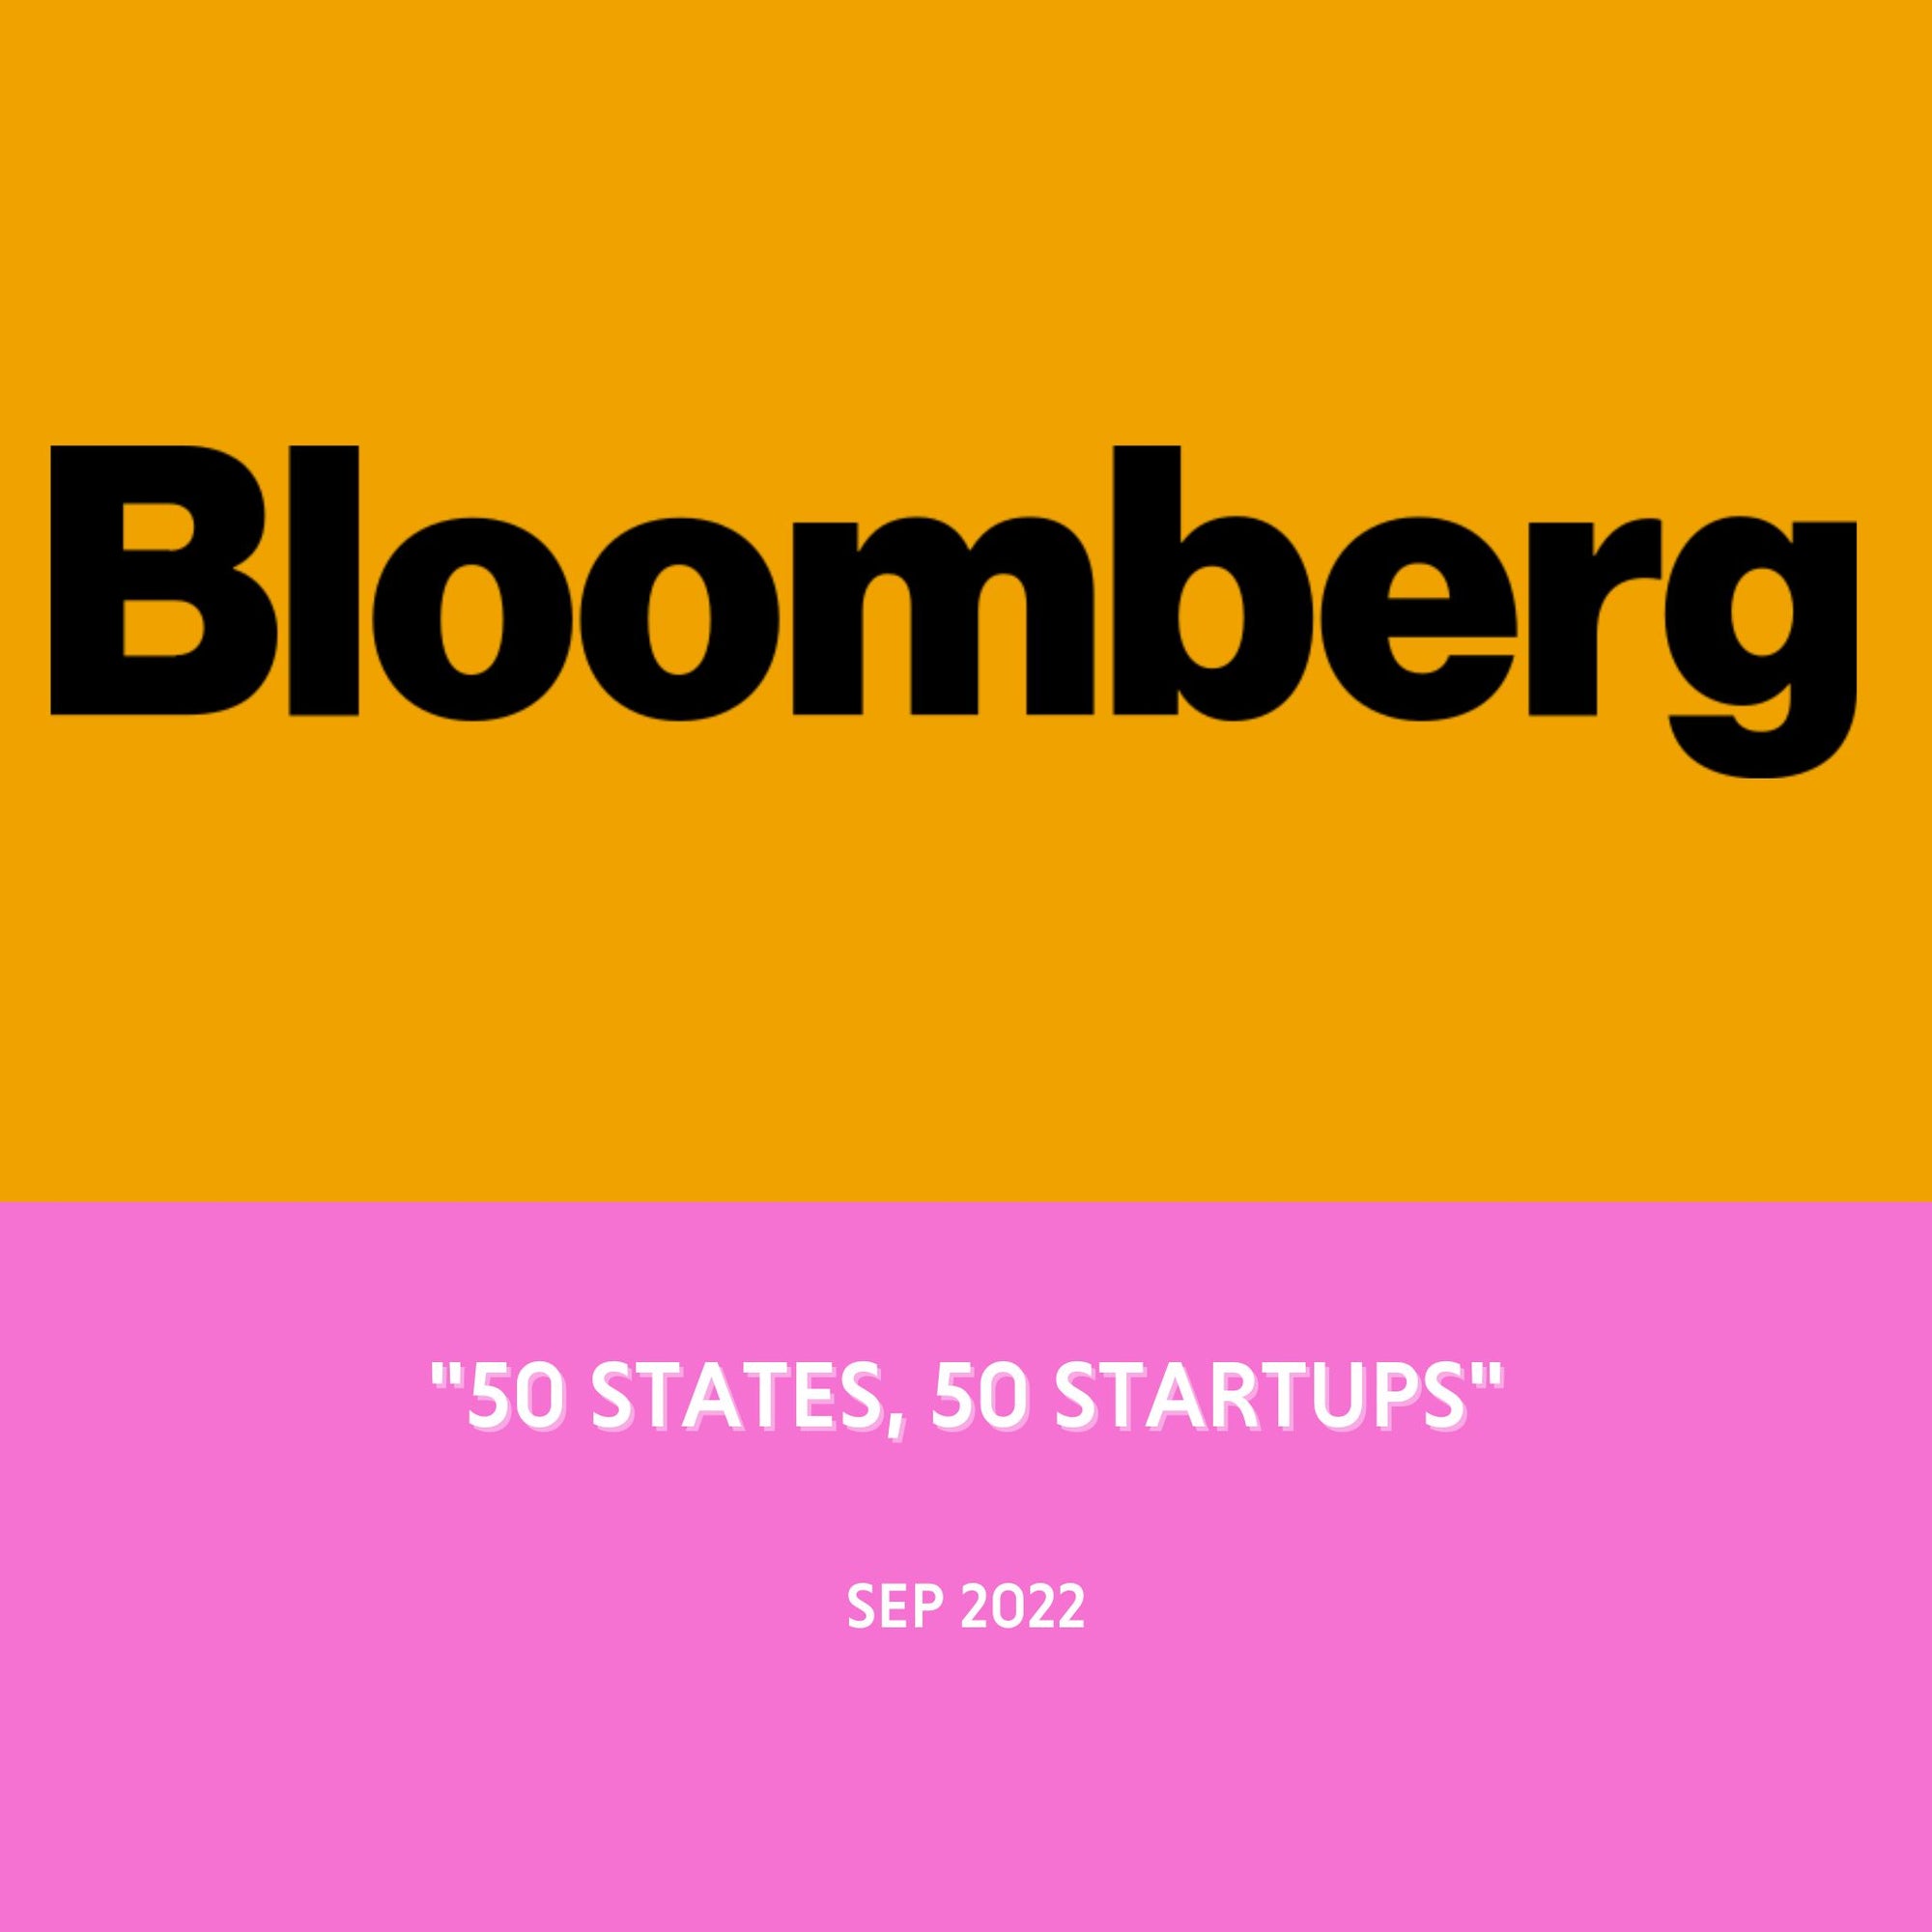 Bloomberg - "50 States, 50 Startups" - Sept 2022